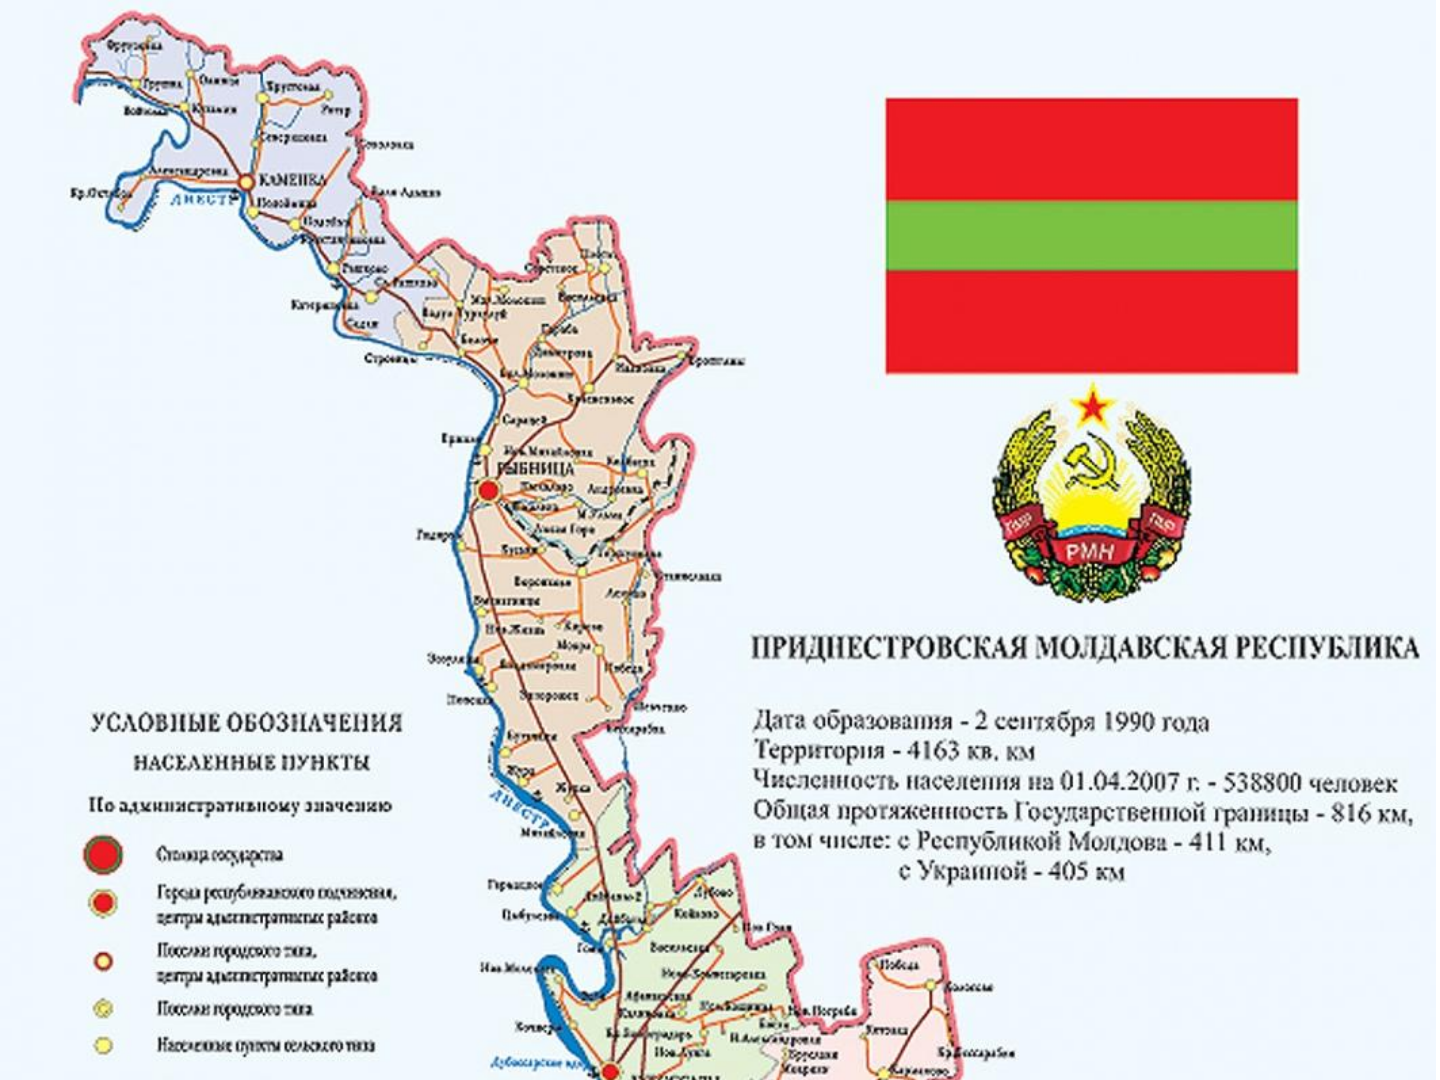 transnistria travel advisory